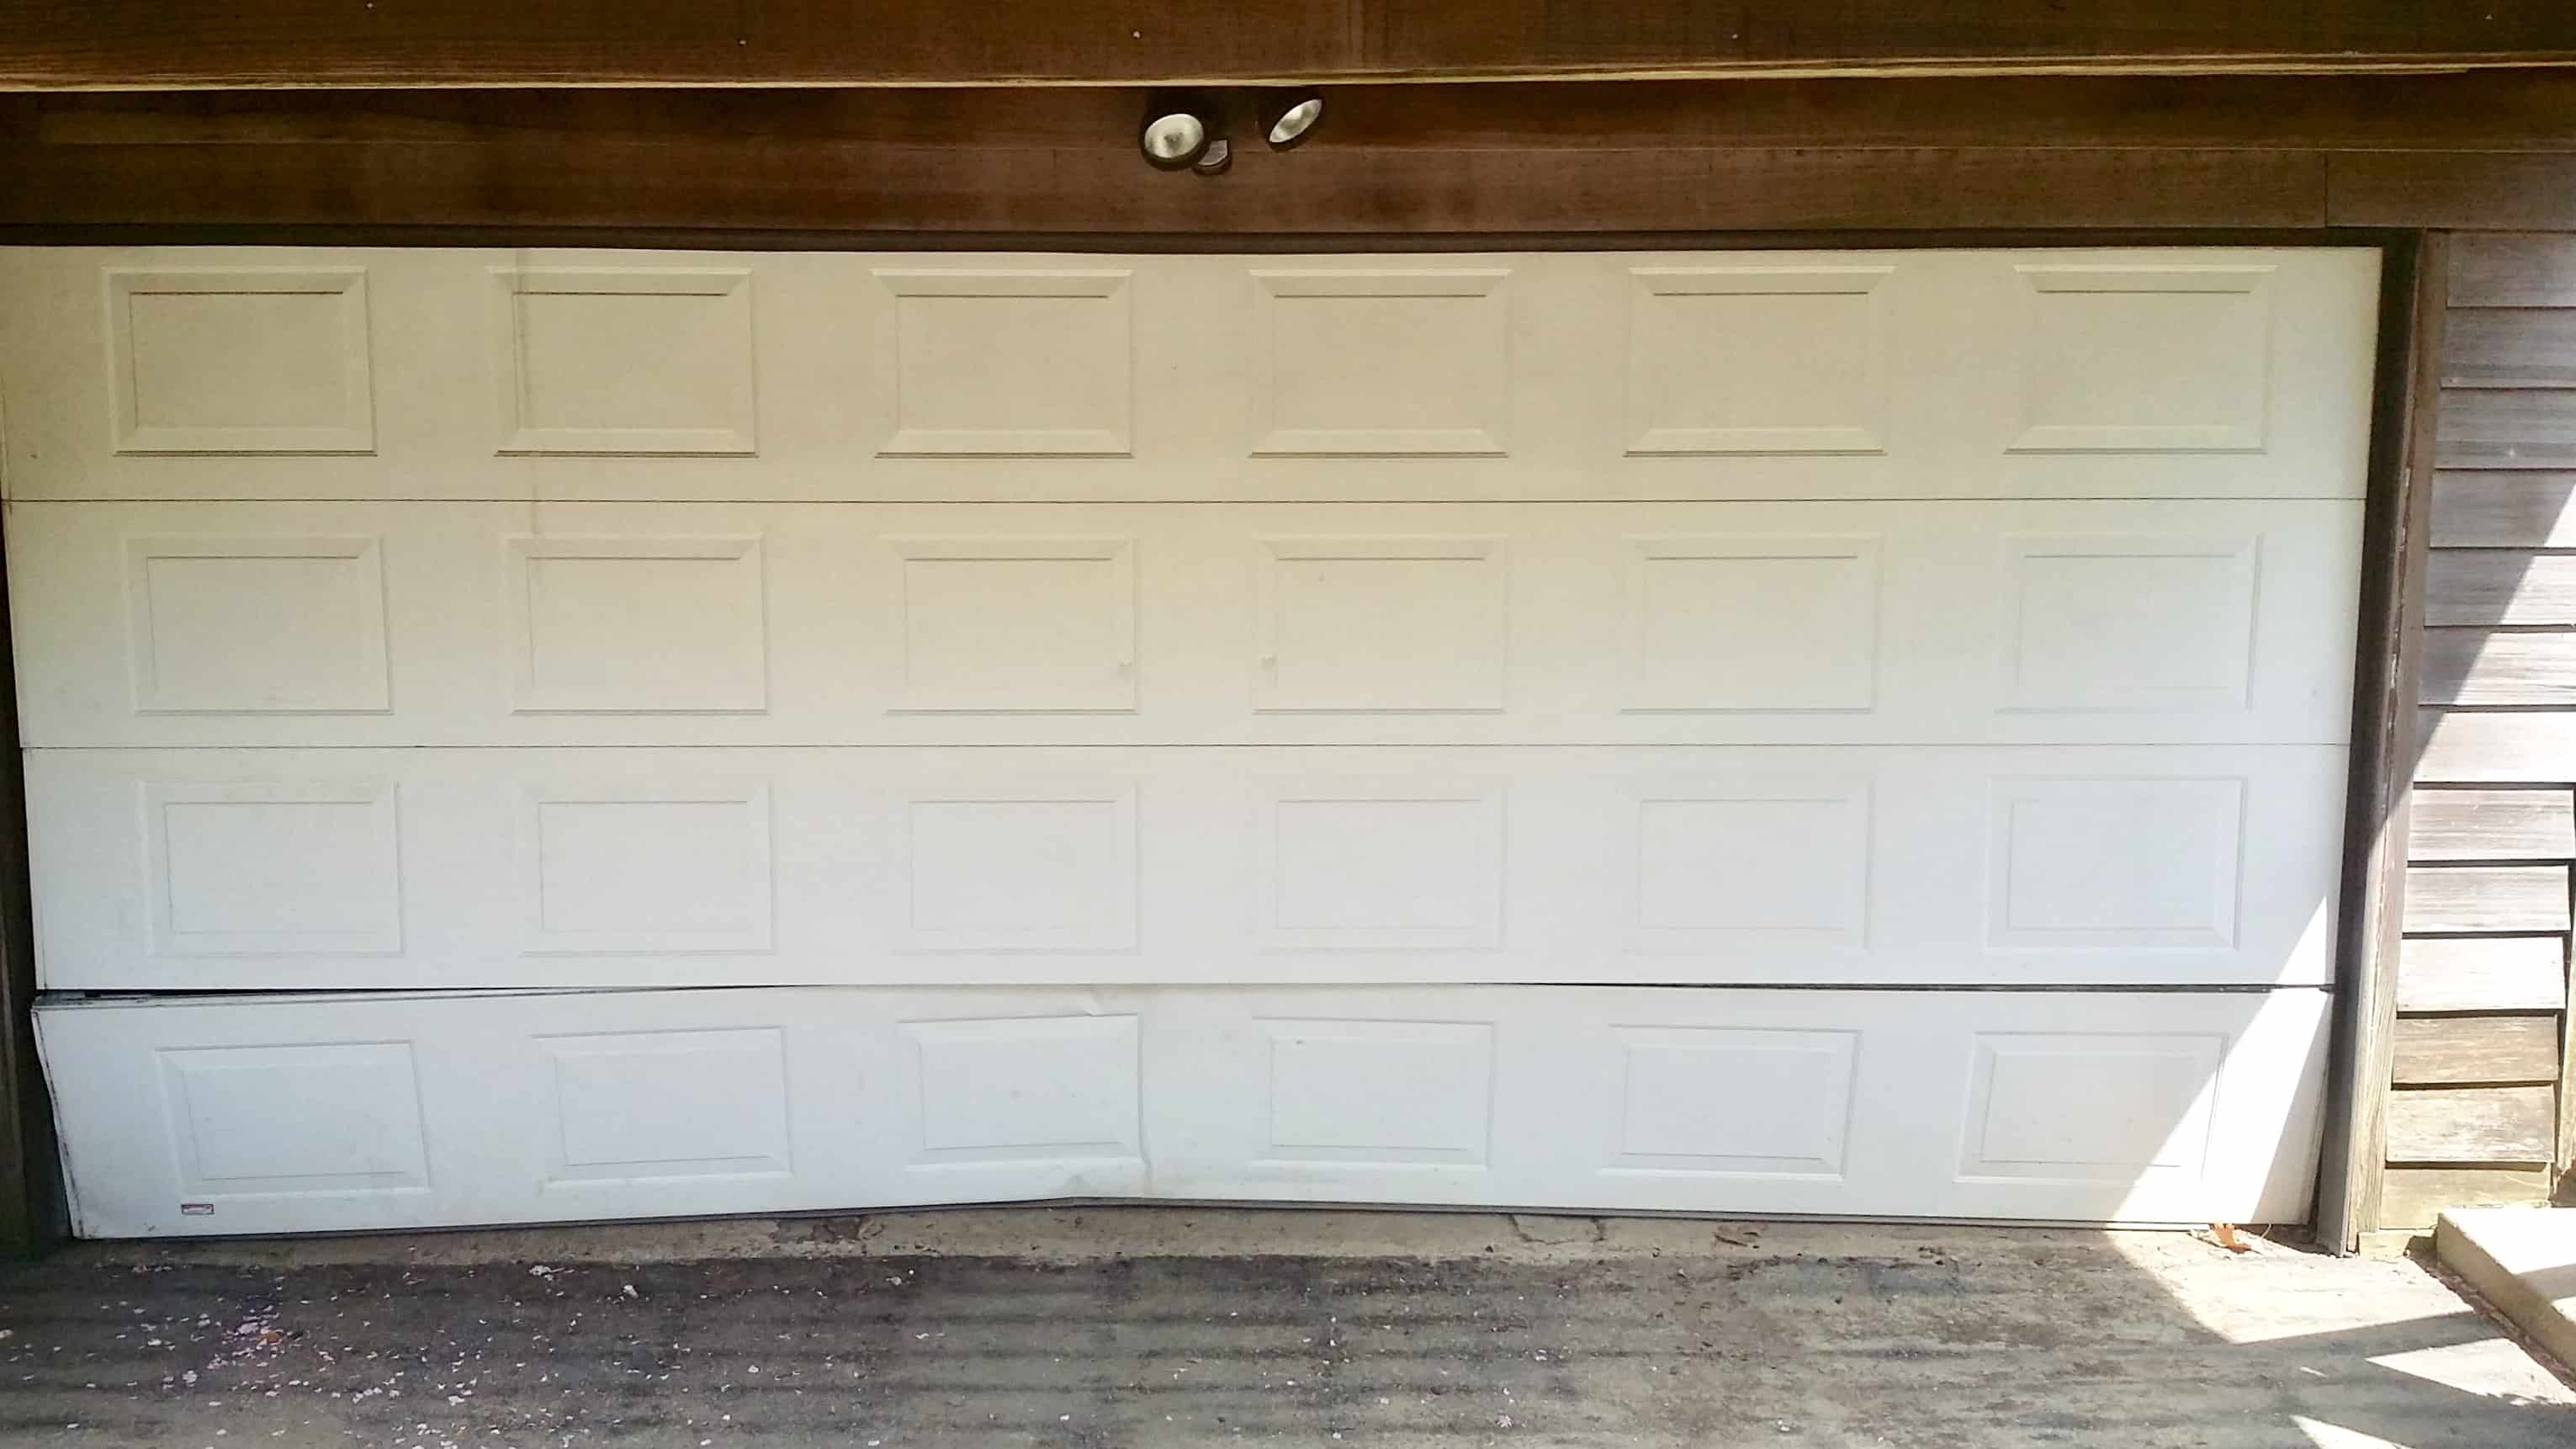 garage door panel replacement